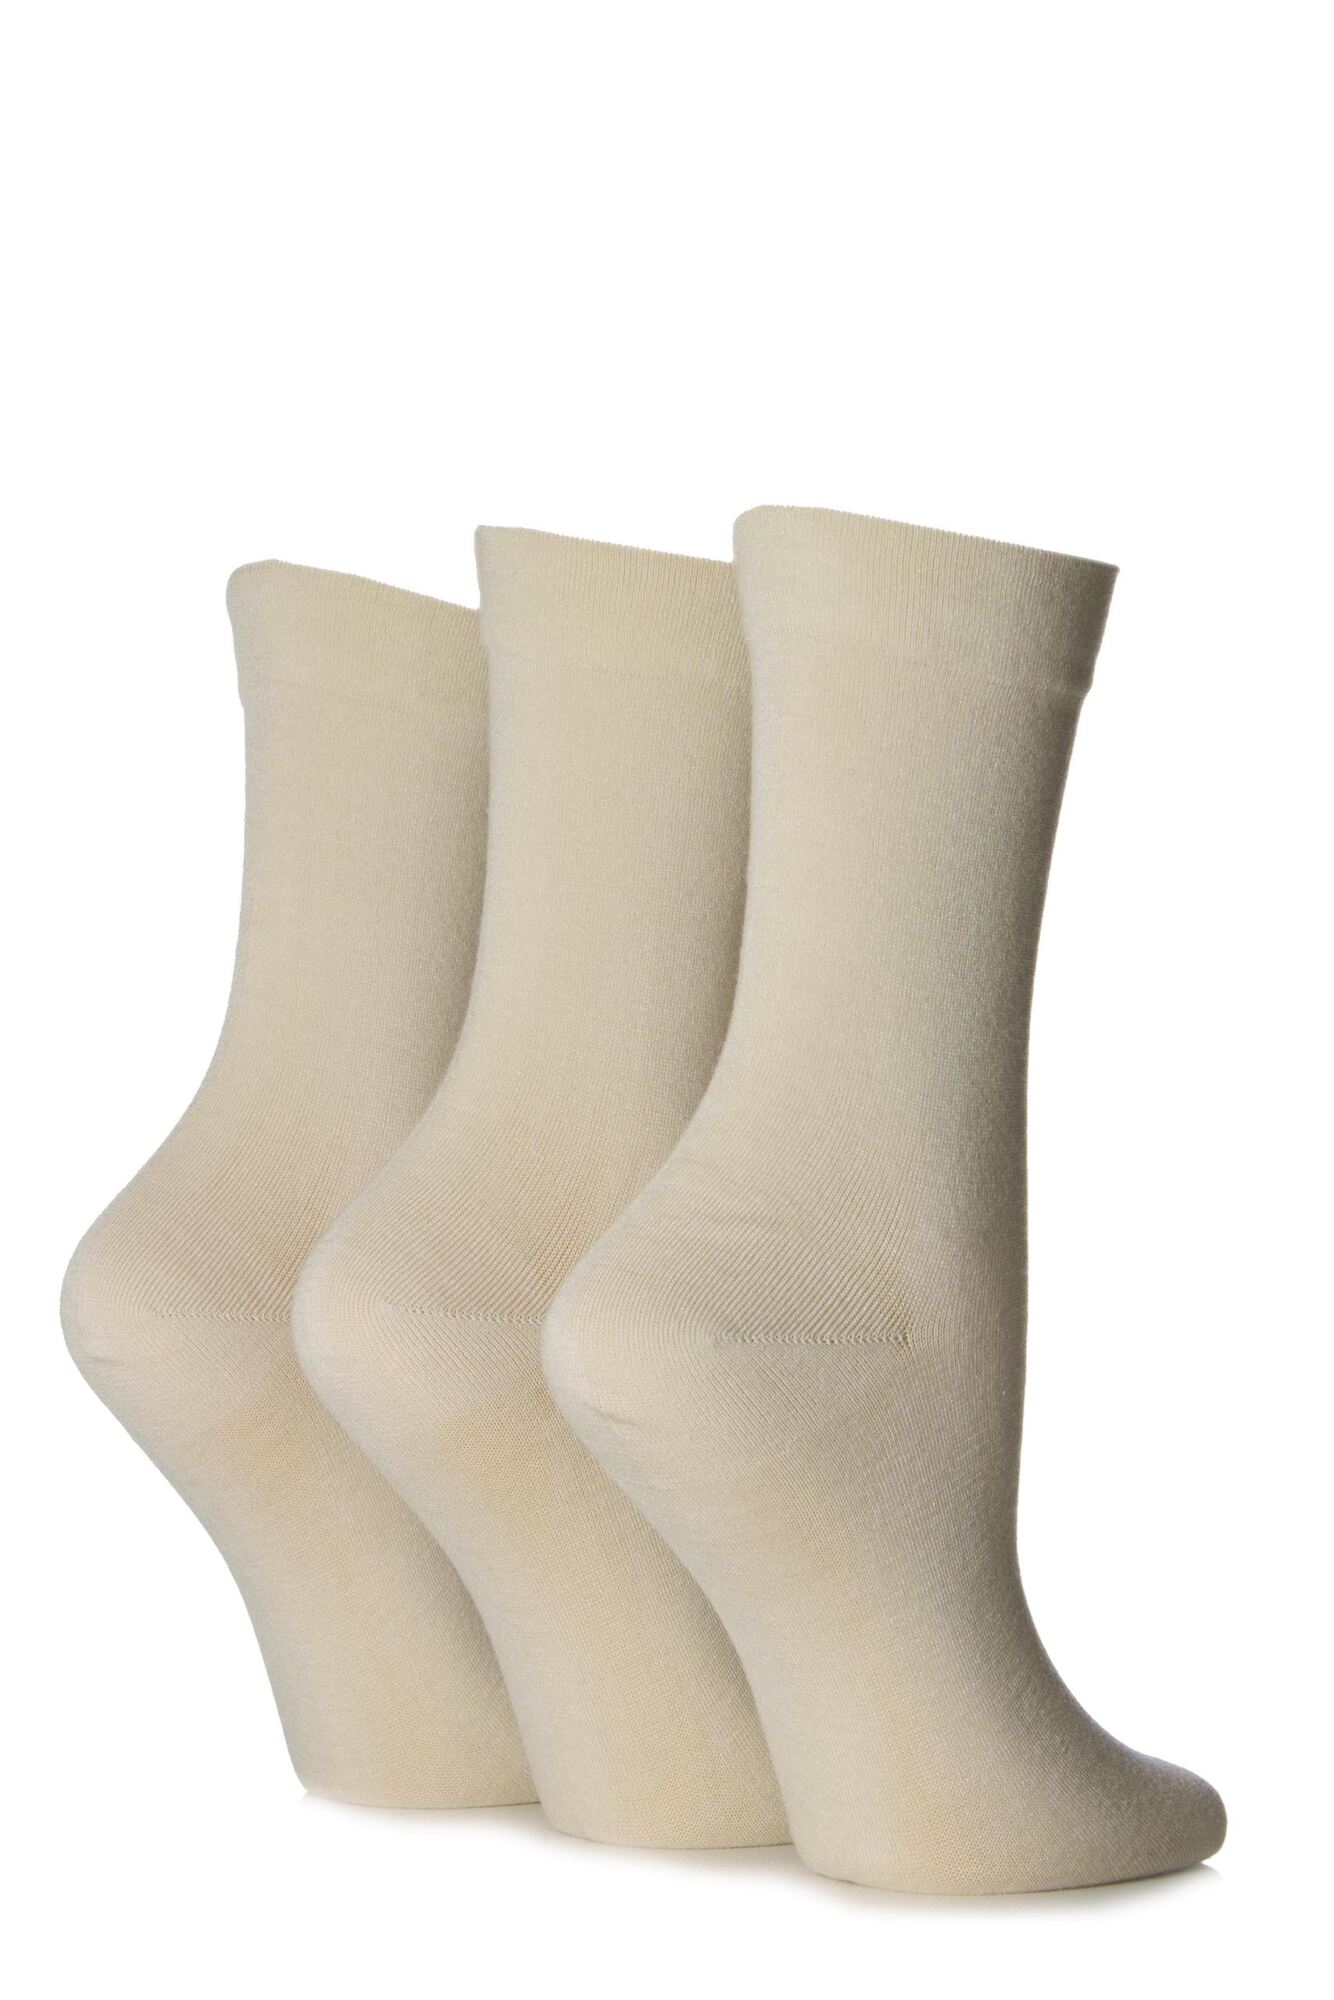 Ladies 3 Pair SOCKSHOP Gentle Bamboo Socks with Smooth Toe Seams in ...